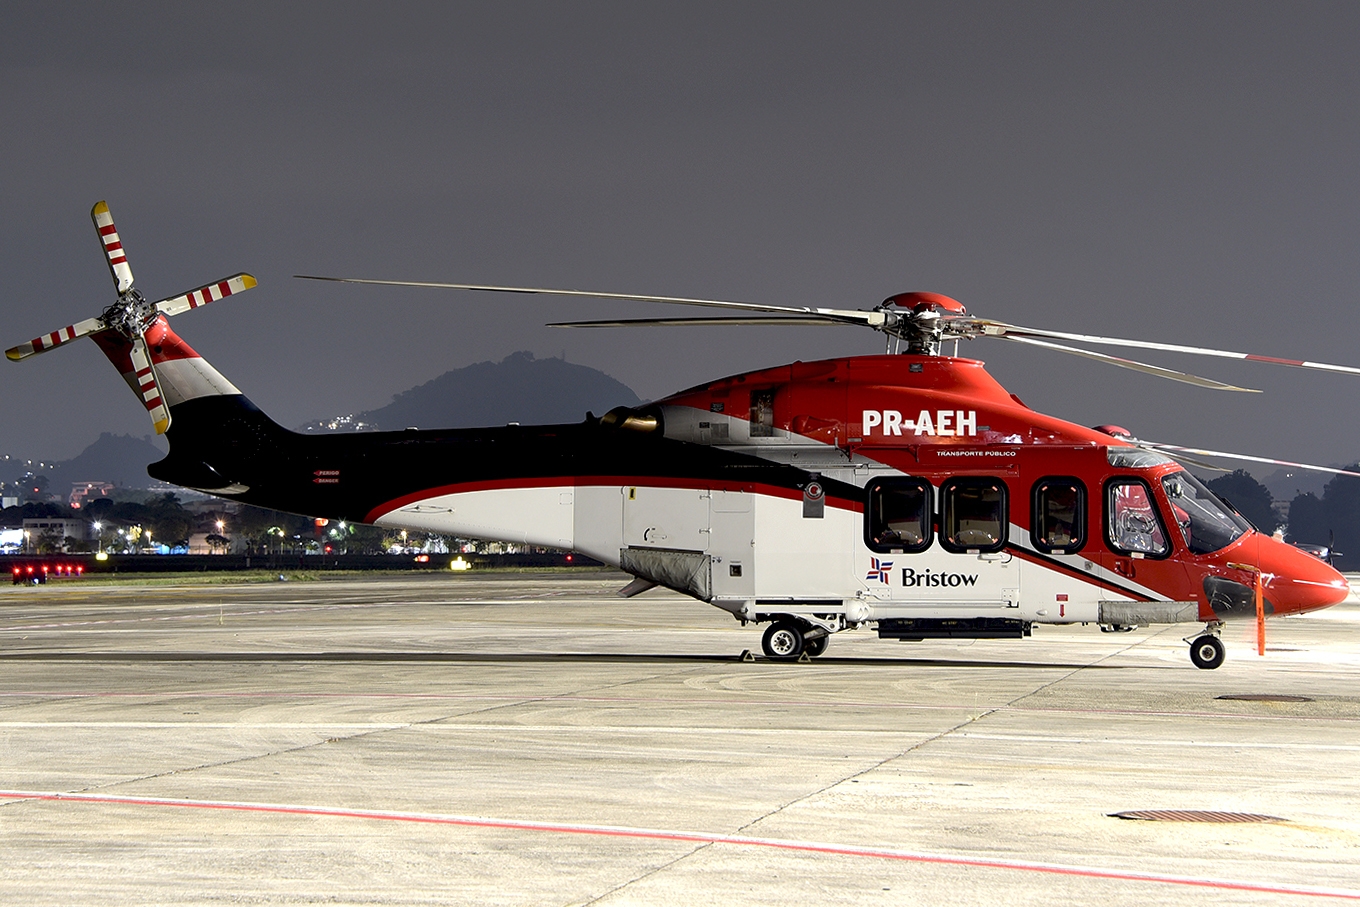 PR-AEH - Agusta-Westland AW139